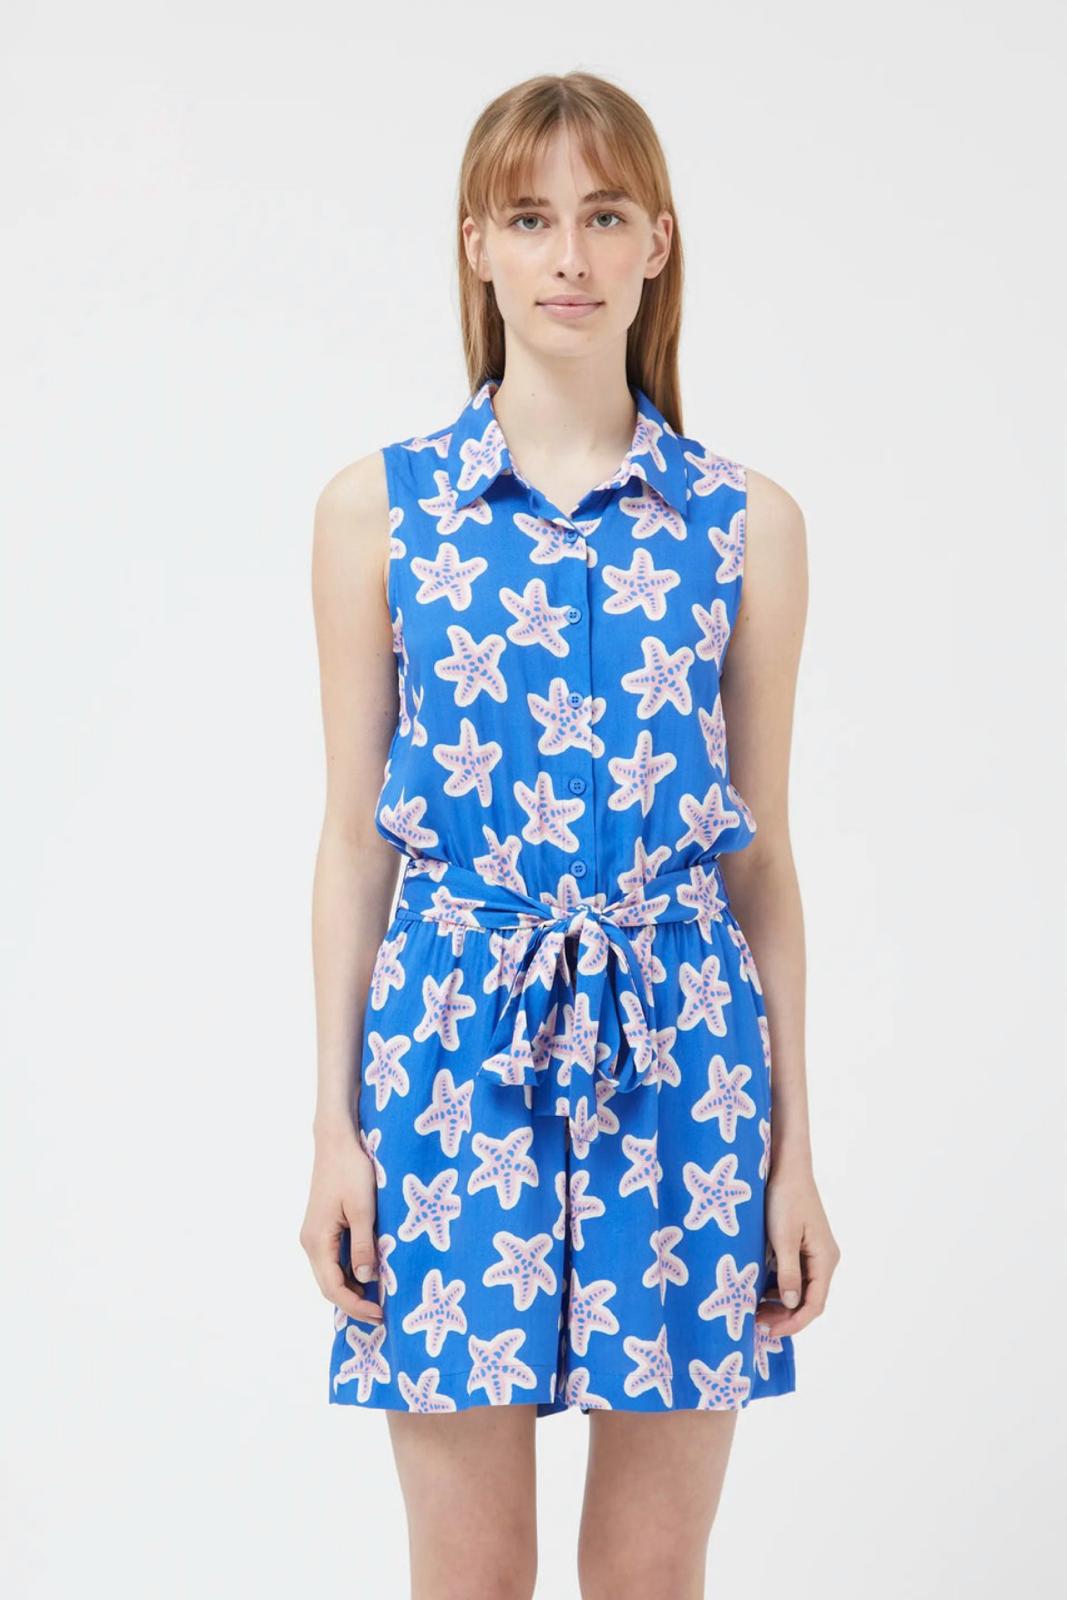 Compania Fantastica 42C- 41116 Shirt dress with star print